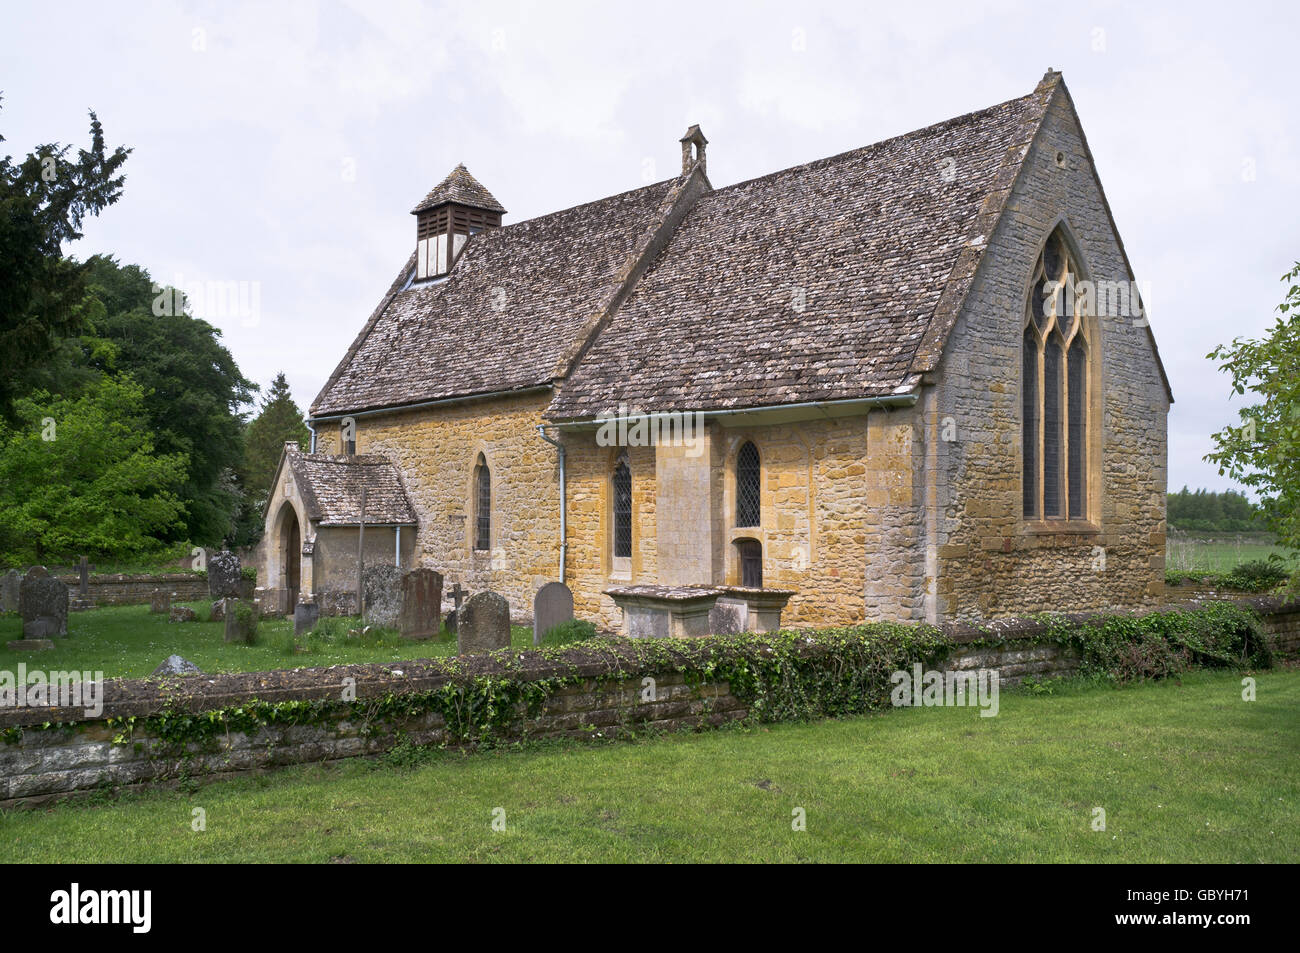 dh Angleterre cotswolds HAILES CHURCH GLOUCESTERSHIRE UK Anglais Norman Cotswold églises de village Banque D'Images